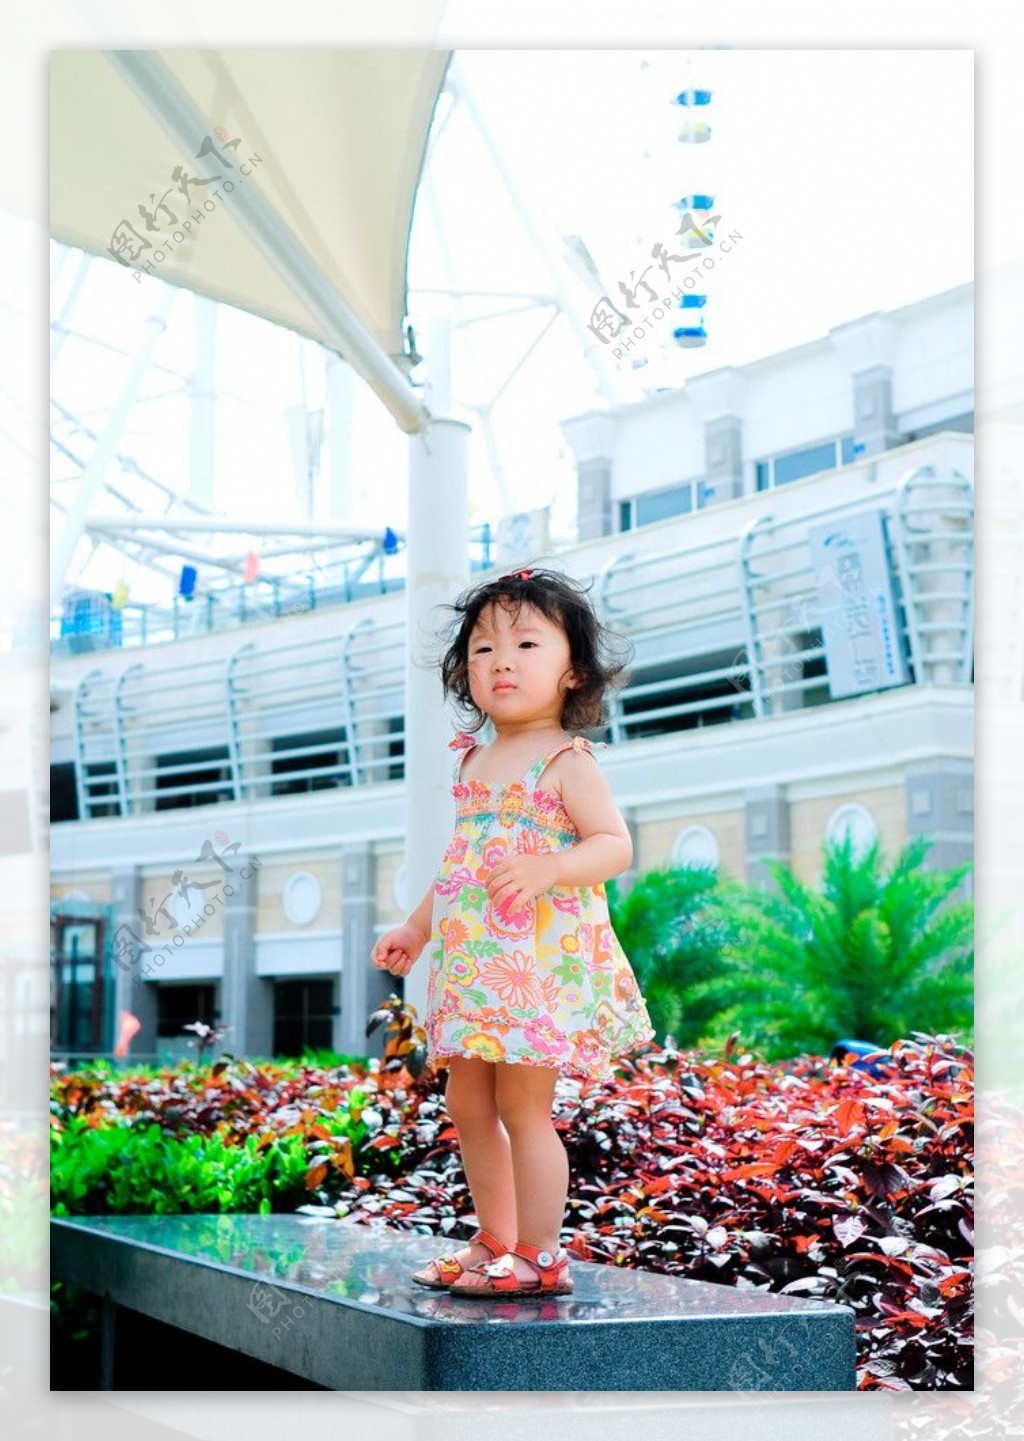 卷毛小公主2周岁照图片